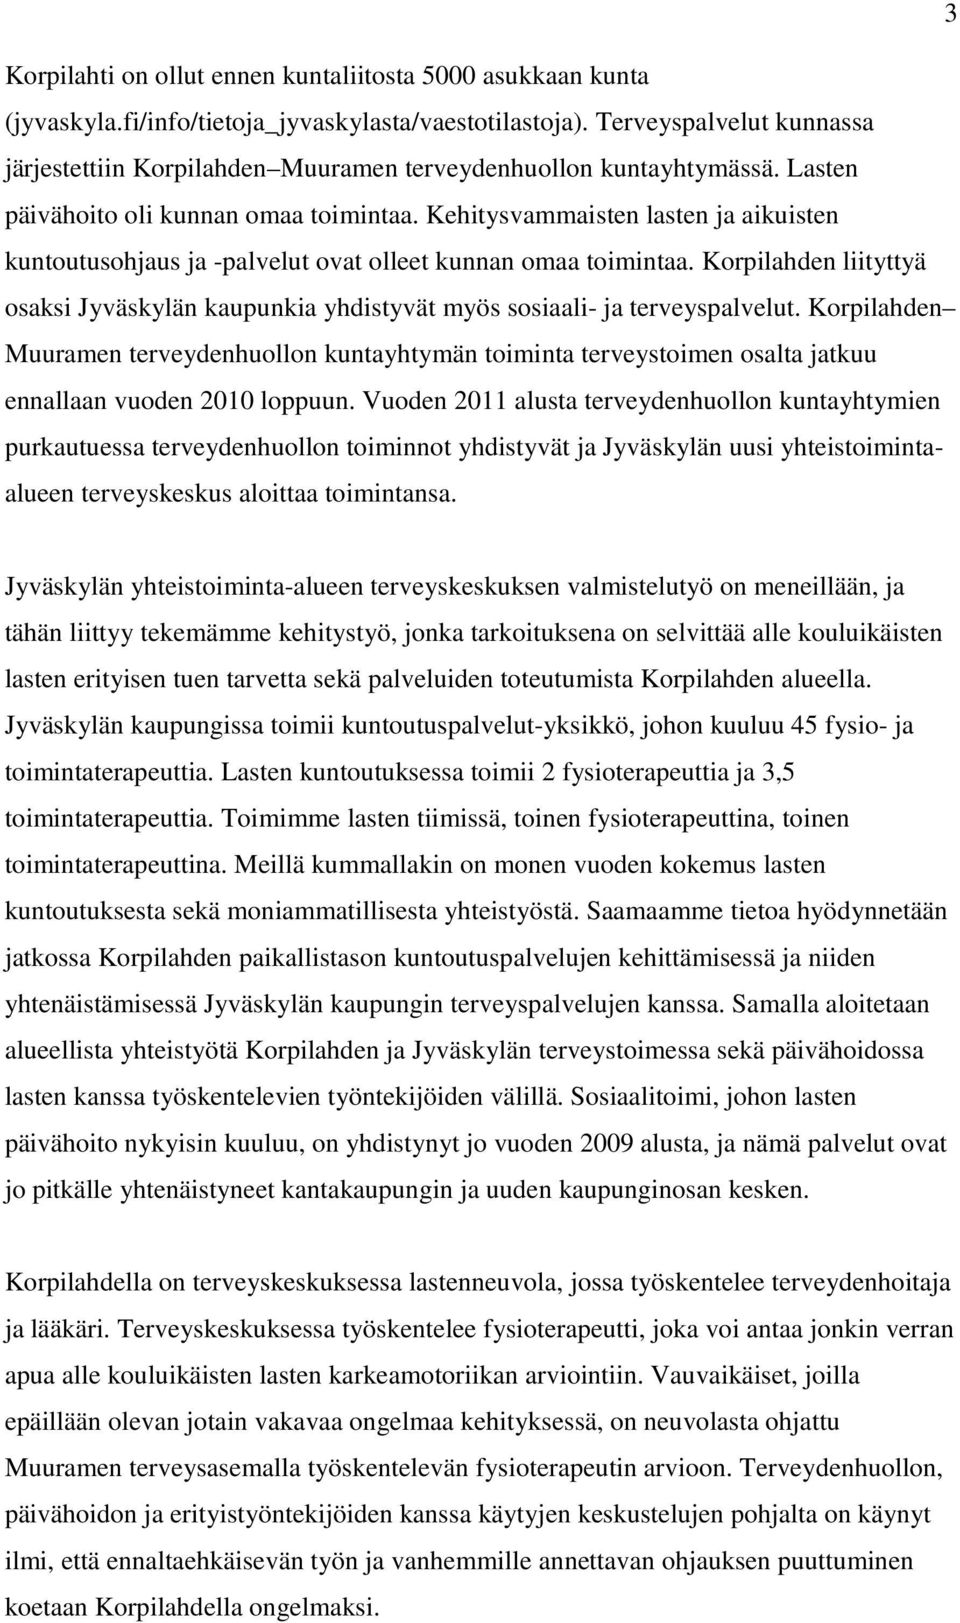 Kehitysvammaisten lasten ja aikuisten kuntoutusohjaus ja -palvelut ovat olleet kunnan omaa toimintaa. Korpilahden liityttyä osaksi Jyväskylän kaupunkia yhdistyvät myös sosiaali- ja terveyspalvelut.